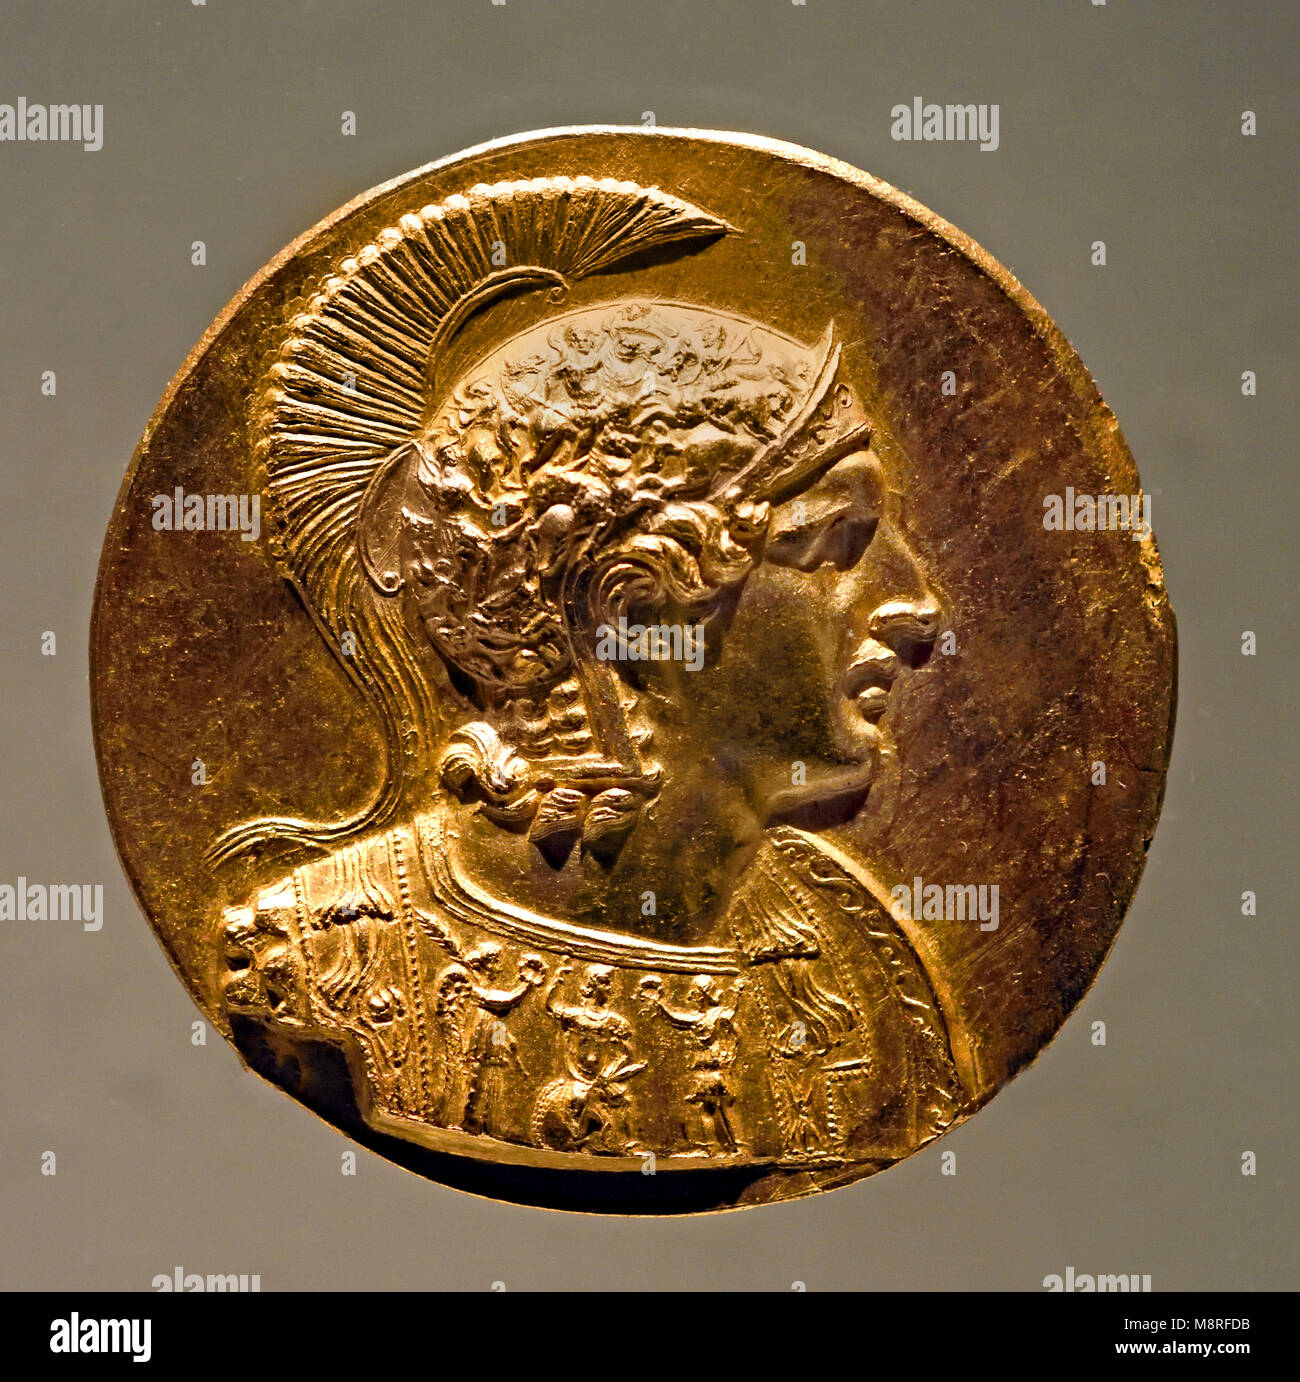 Alexandre le Grand était un ancien roi de Macédoine (356-323 av. J.-C.). Le grec, la Grèce ( Cuirassed bust of Alexander porter avec bouclier et casque Grenier ) Banque D'Images